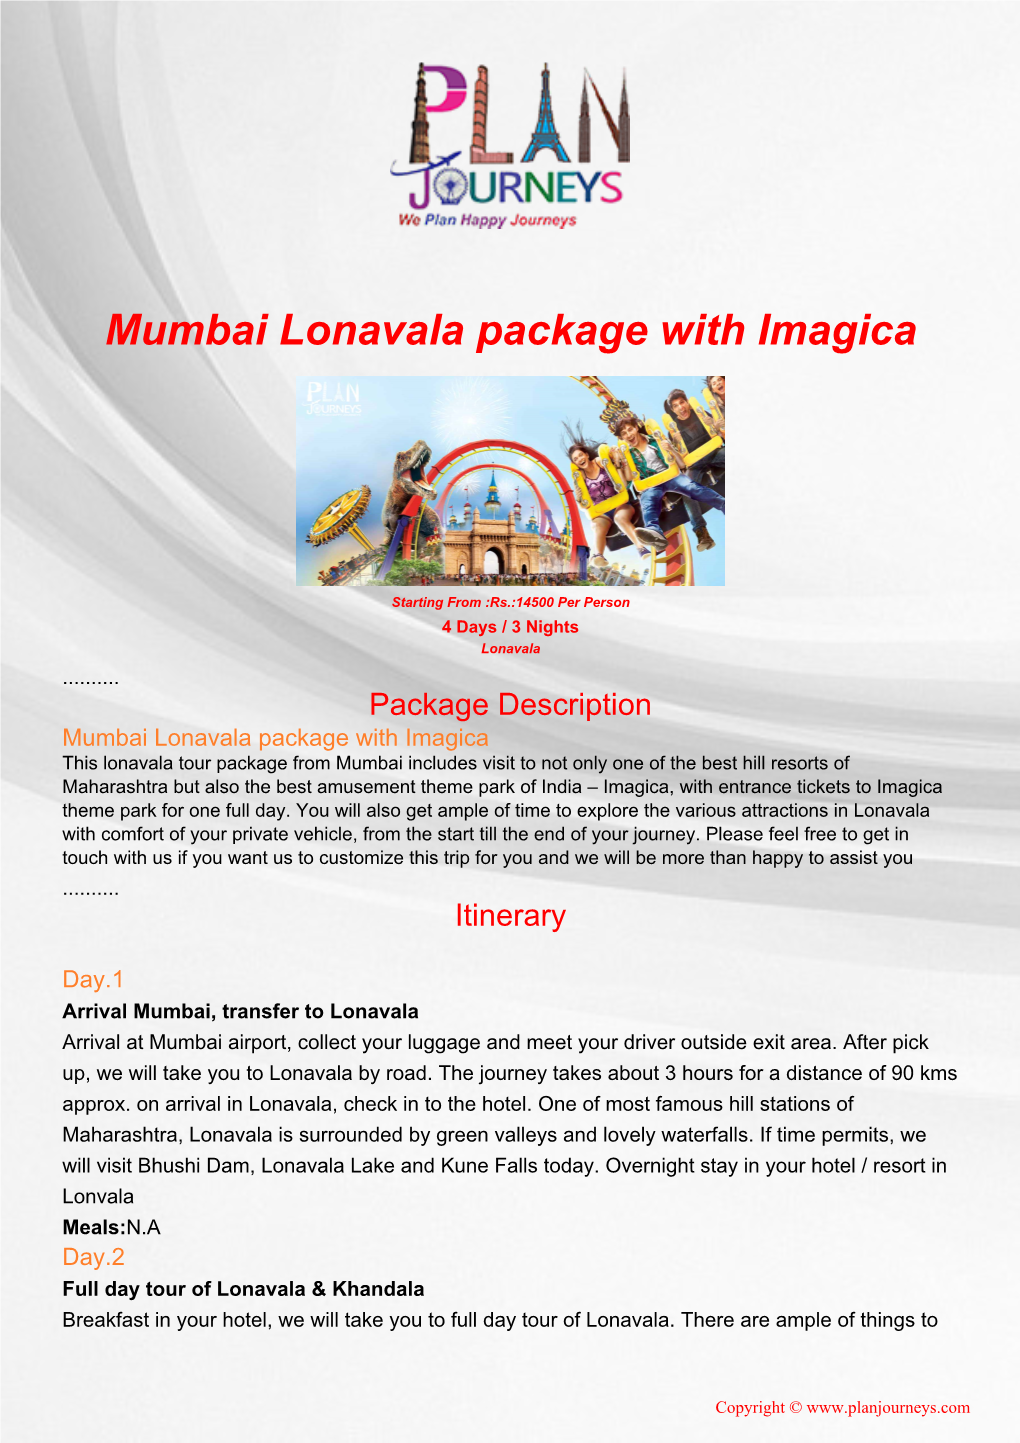 Mumbai Lonavala Package with Imagica